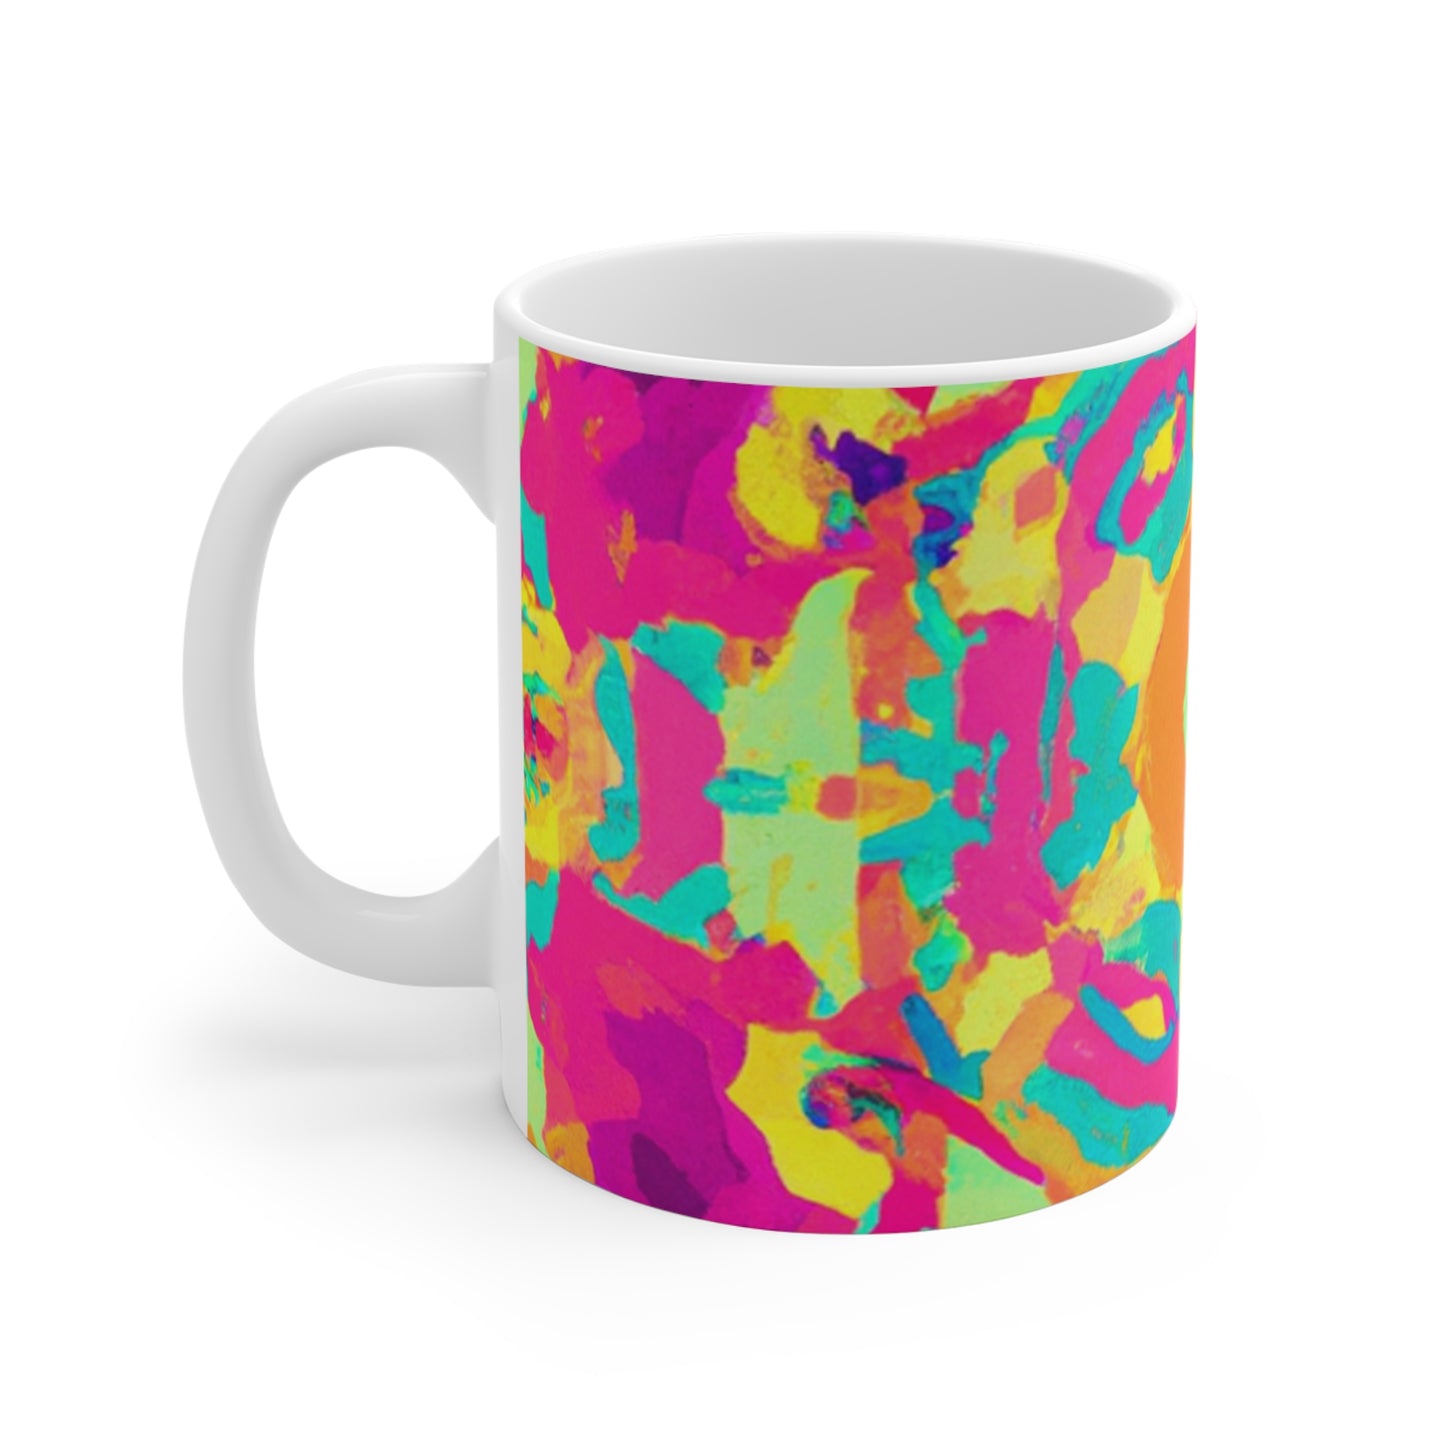 Della's Delightful Coffee - Psychedelic Coffee Cup Mug 11 Ounce